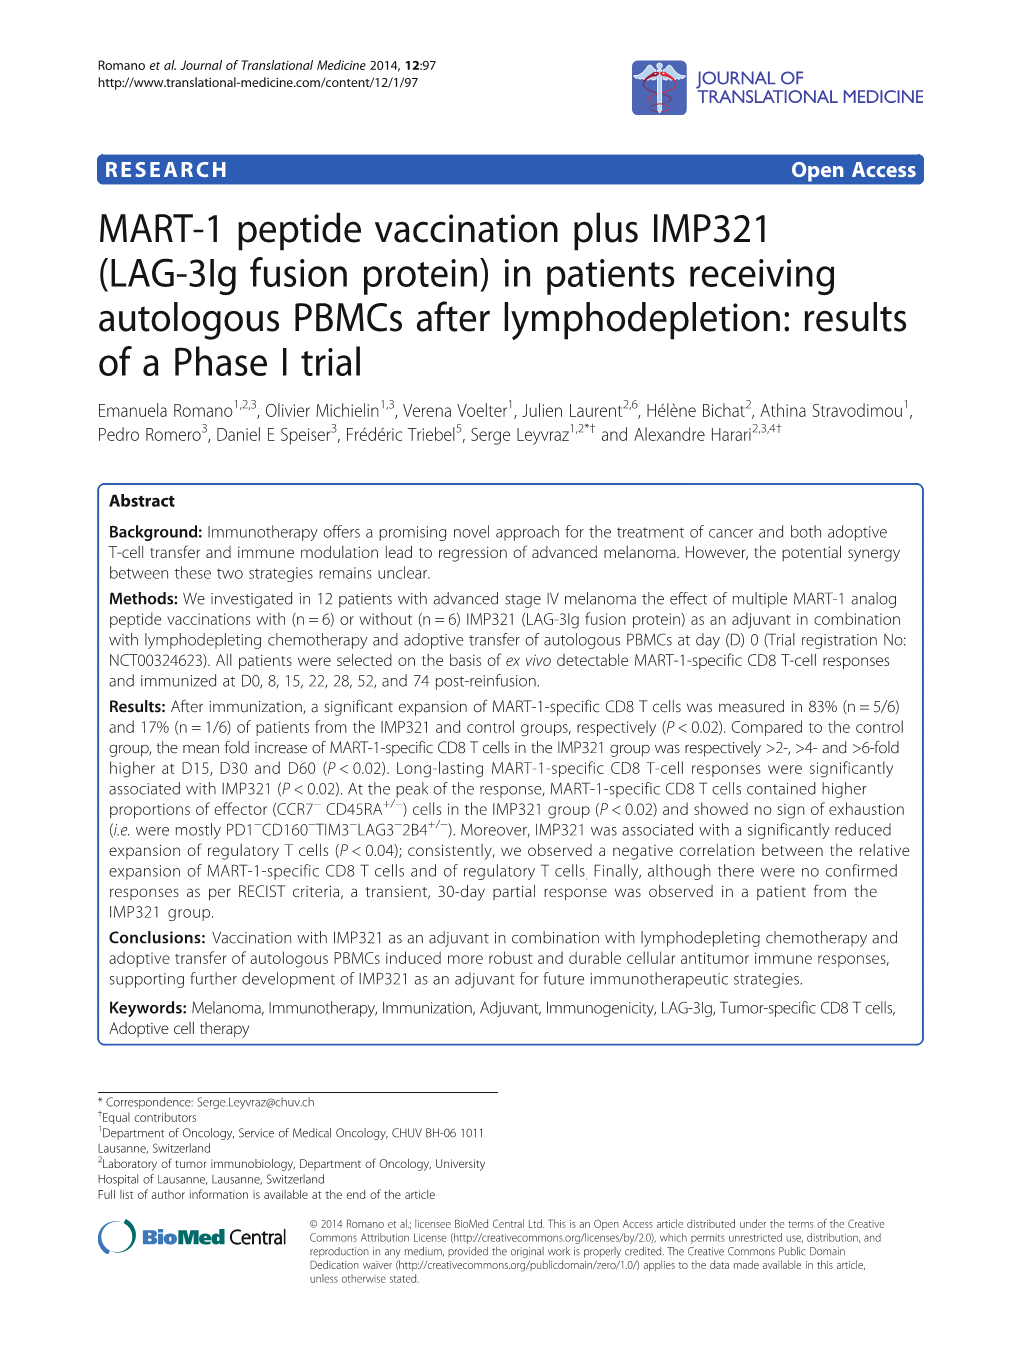 MART-1 Peptide Vaccination Plus IMP321